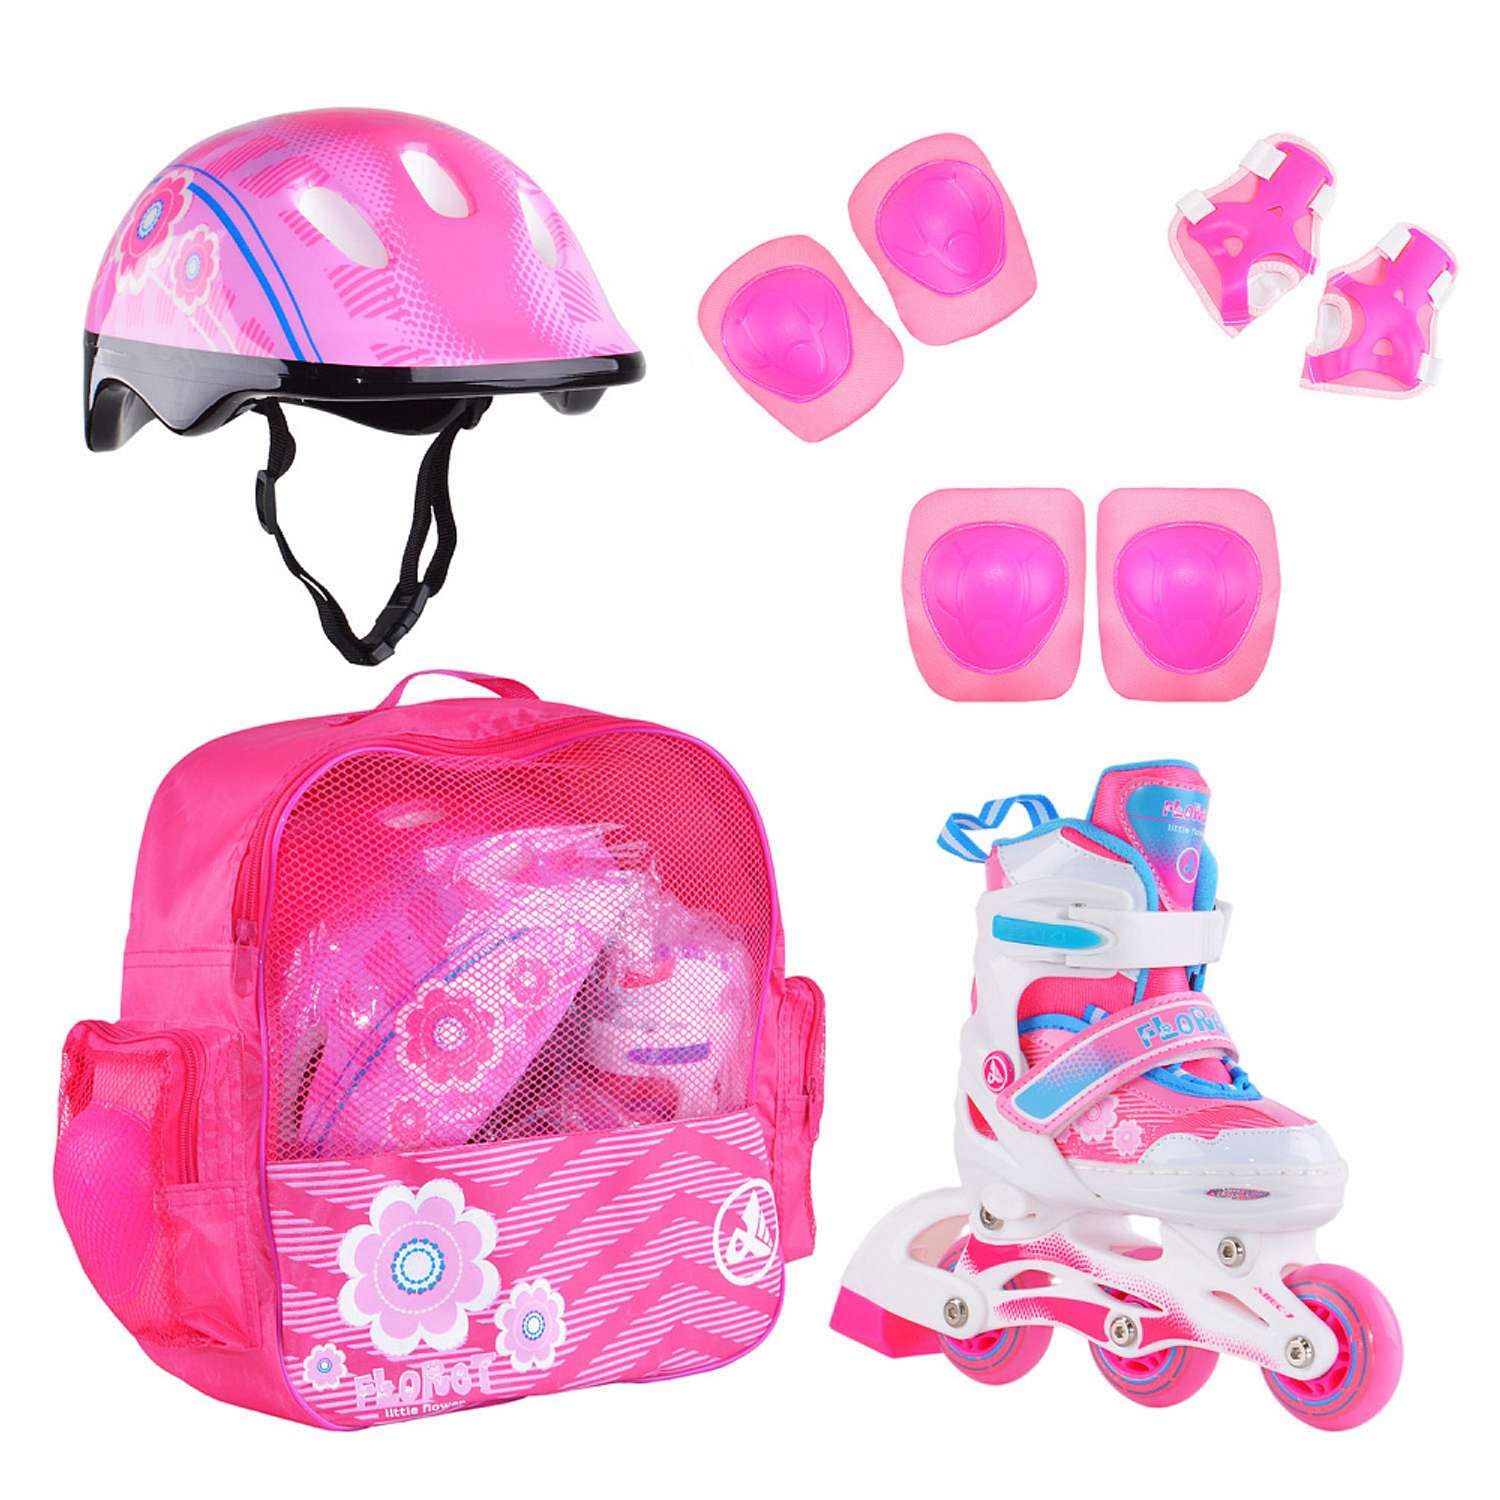 Набор роликовые коньки Alpha Caprice раздвижные Floret White Pink Blue шлем и набор защиты в сумке размер XS 27-30 - фото 1